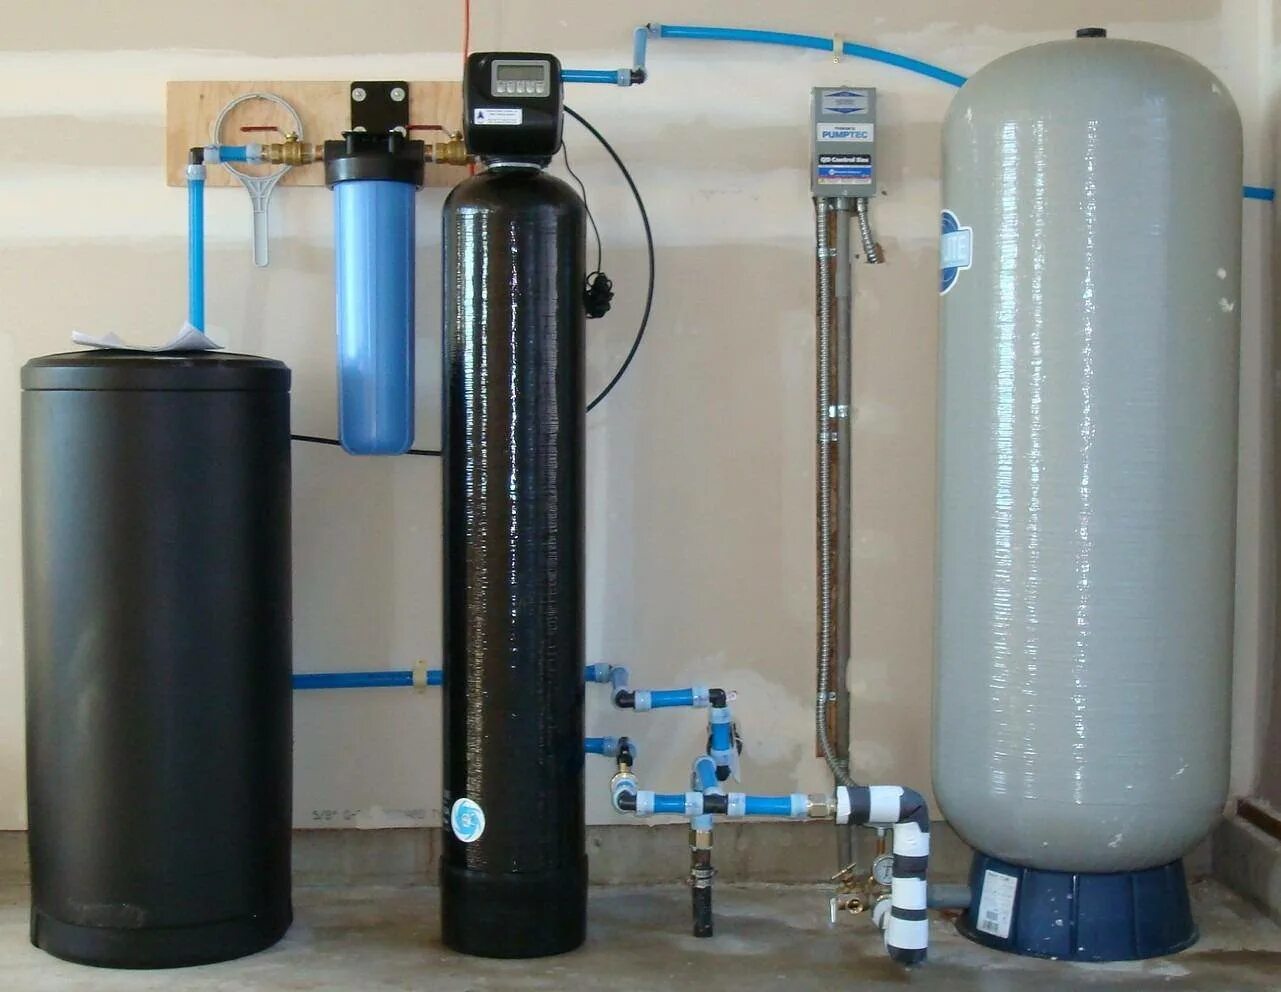 Фильтр обезжелезивания воды для дачи. Фильтр для воды от железа из скважины vdsm 1354c. Магистральный фильтр обезжелезивание для скважин. Softener фильтр для воды. Вода очищенная используемая для приготовления